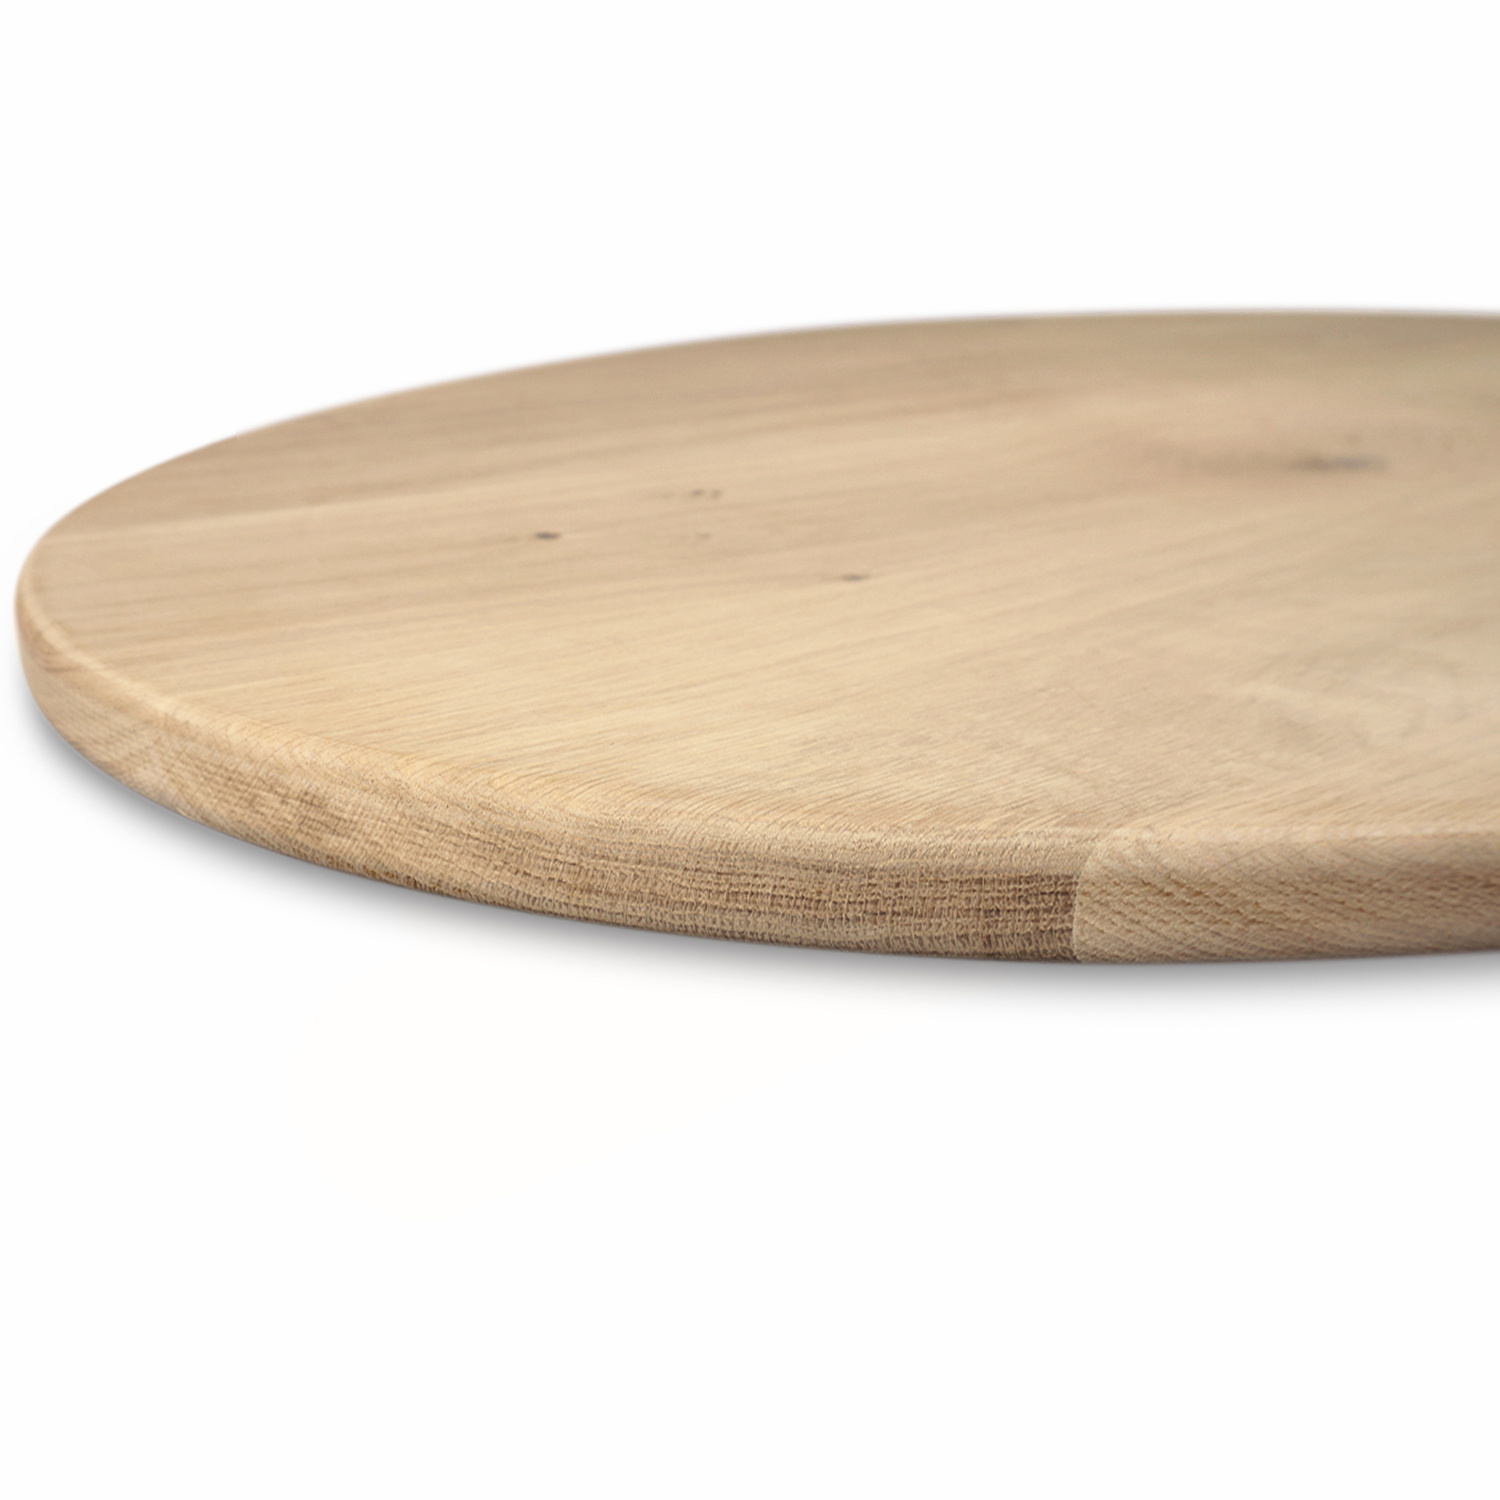  Eiken tafelblad rond - 3 cm dik (1-laag) - Diverse afmetingen - optioneel geborsteld - extra rustiek Europees eikenhout - met extra brede lamellen (circa 14-20 cm) - verlijmd kd 10-12%